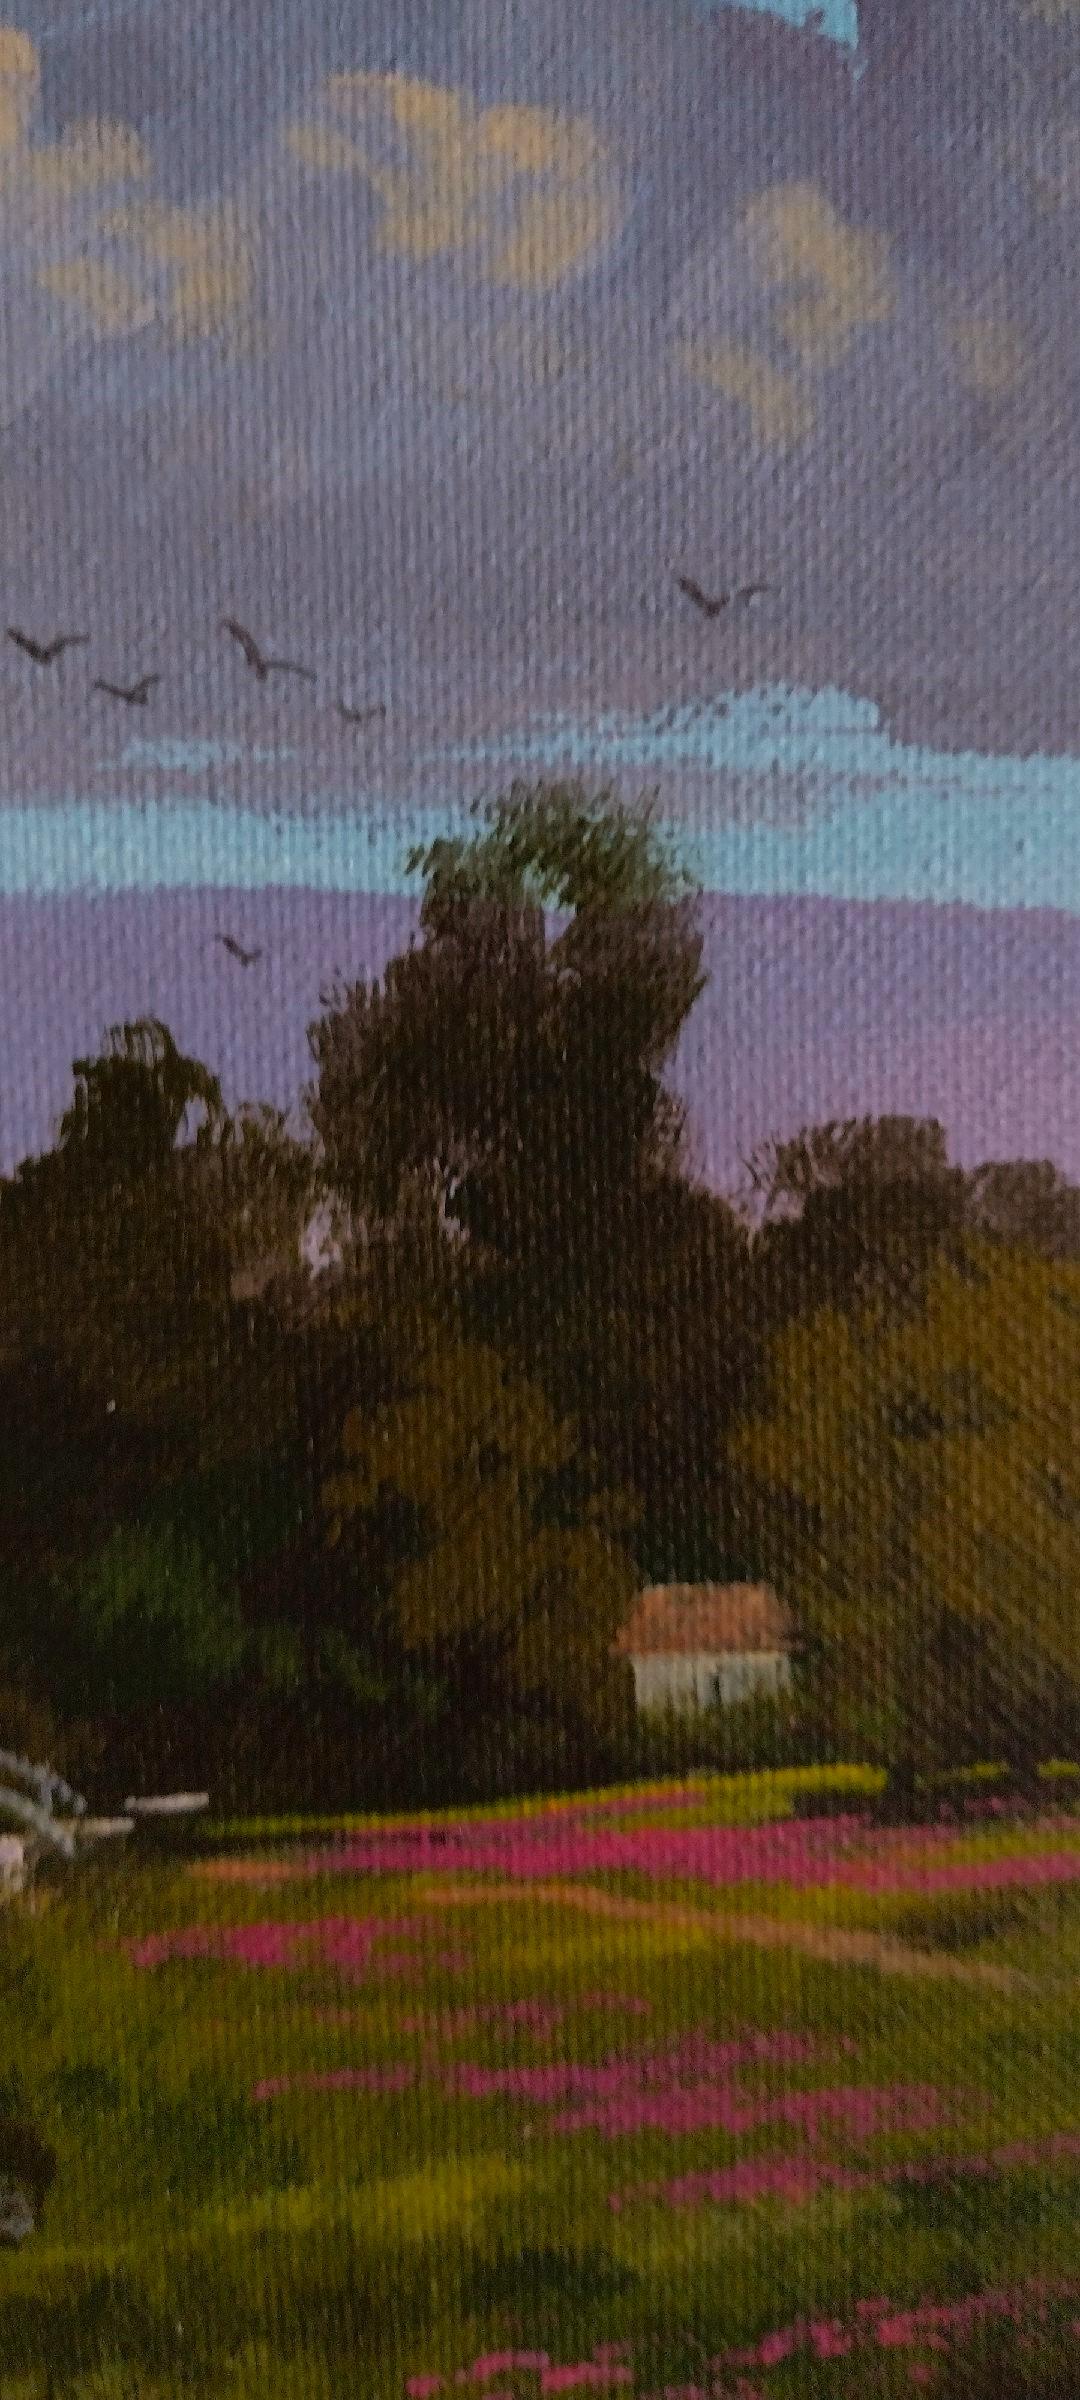 Der Künstler hat eine schöne ländliche Umgebung für ein Haus mit einem plätschernden Bach gemalt, der durch die Mitte des Bildes fließt. Der Bach zieht den Blick hinauf zum Haus, zu den Bäumen und den wogenden Wolken.

Künstler-Bio:
Douglas 